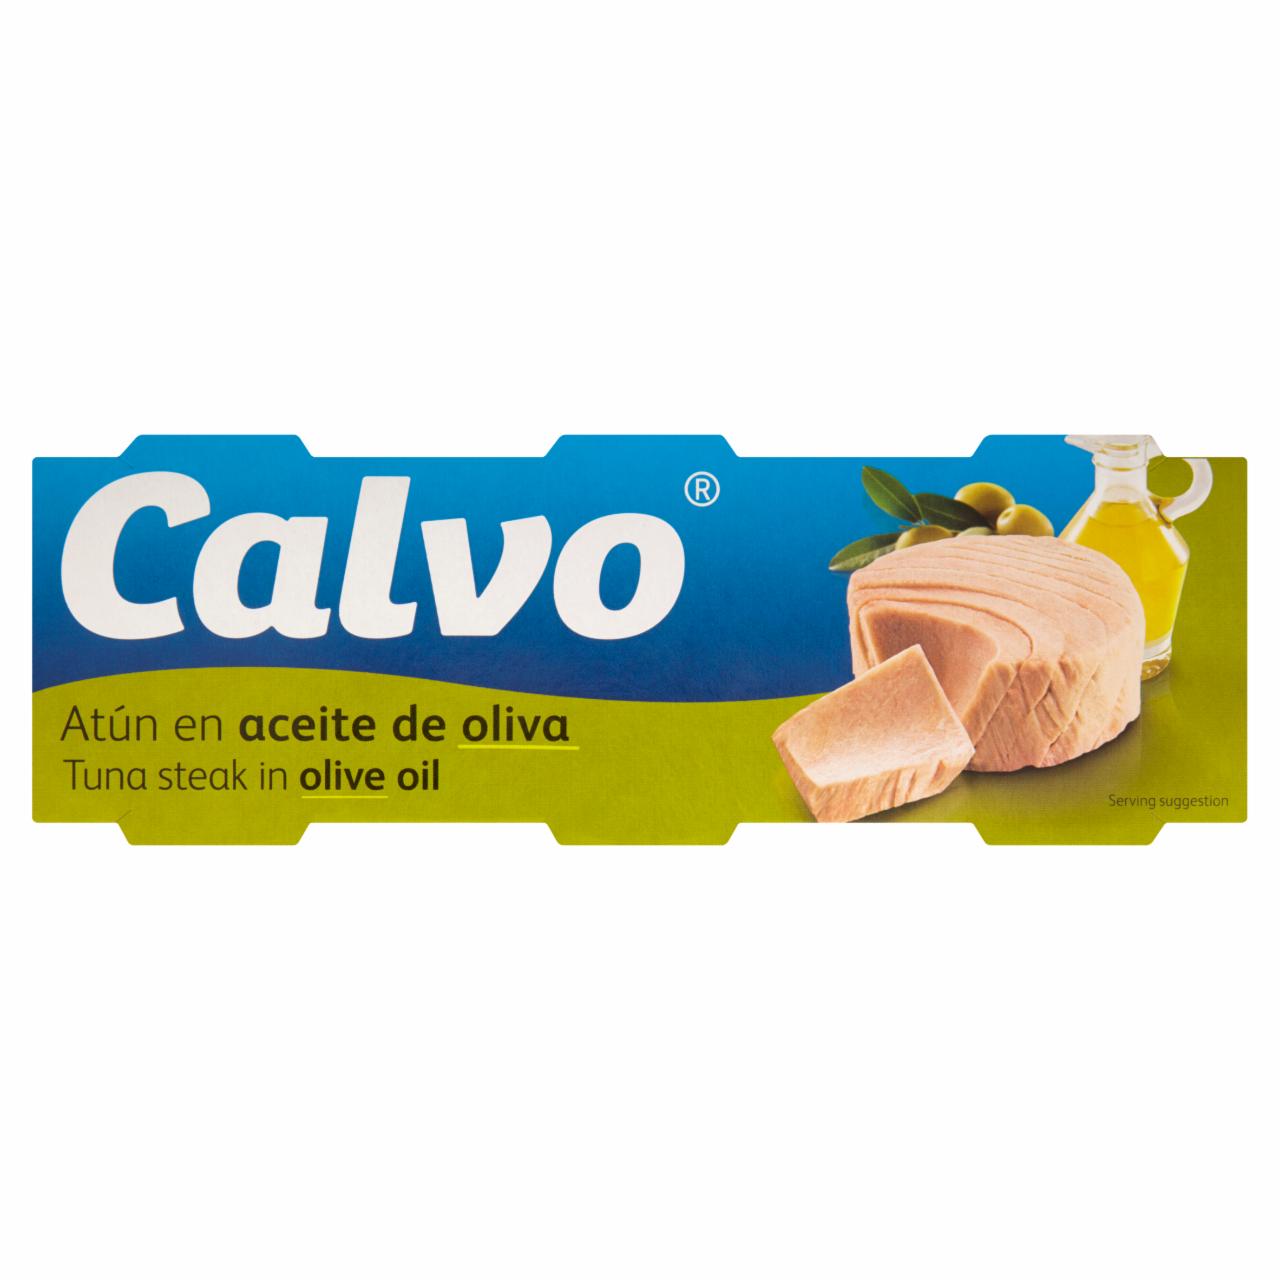 Képek - Calvo tonhal olívaolajban 3 x 80 g